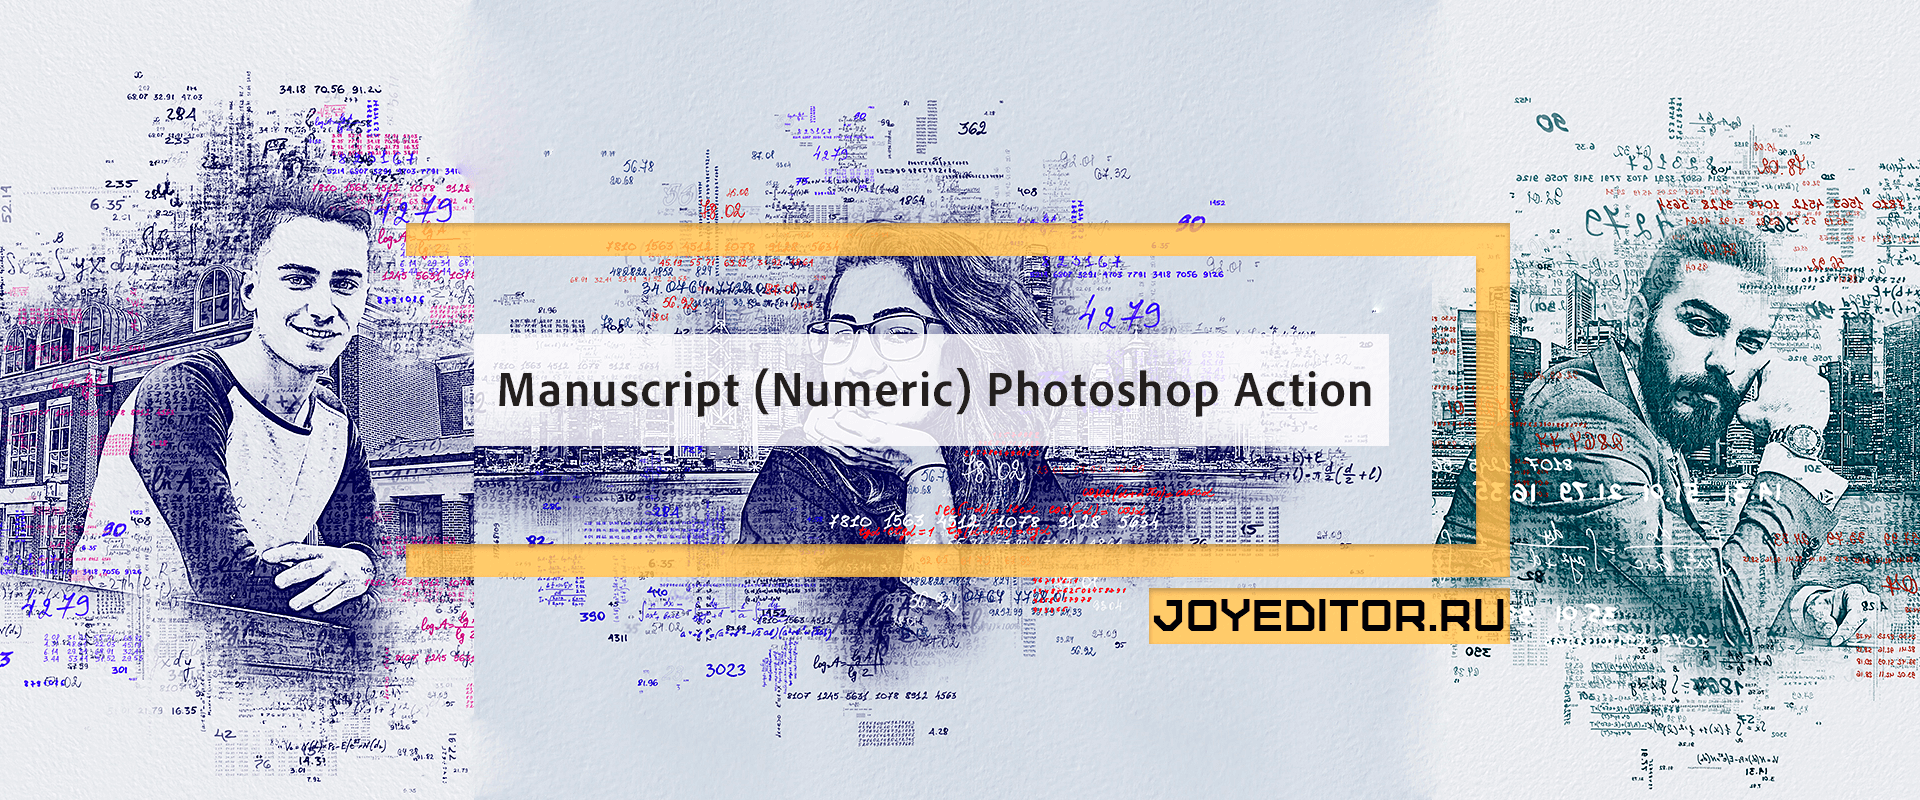 Manuscript (Numeric) Photoshop Action